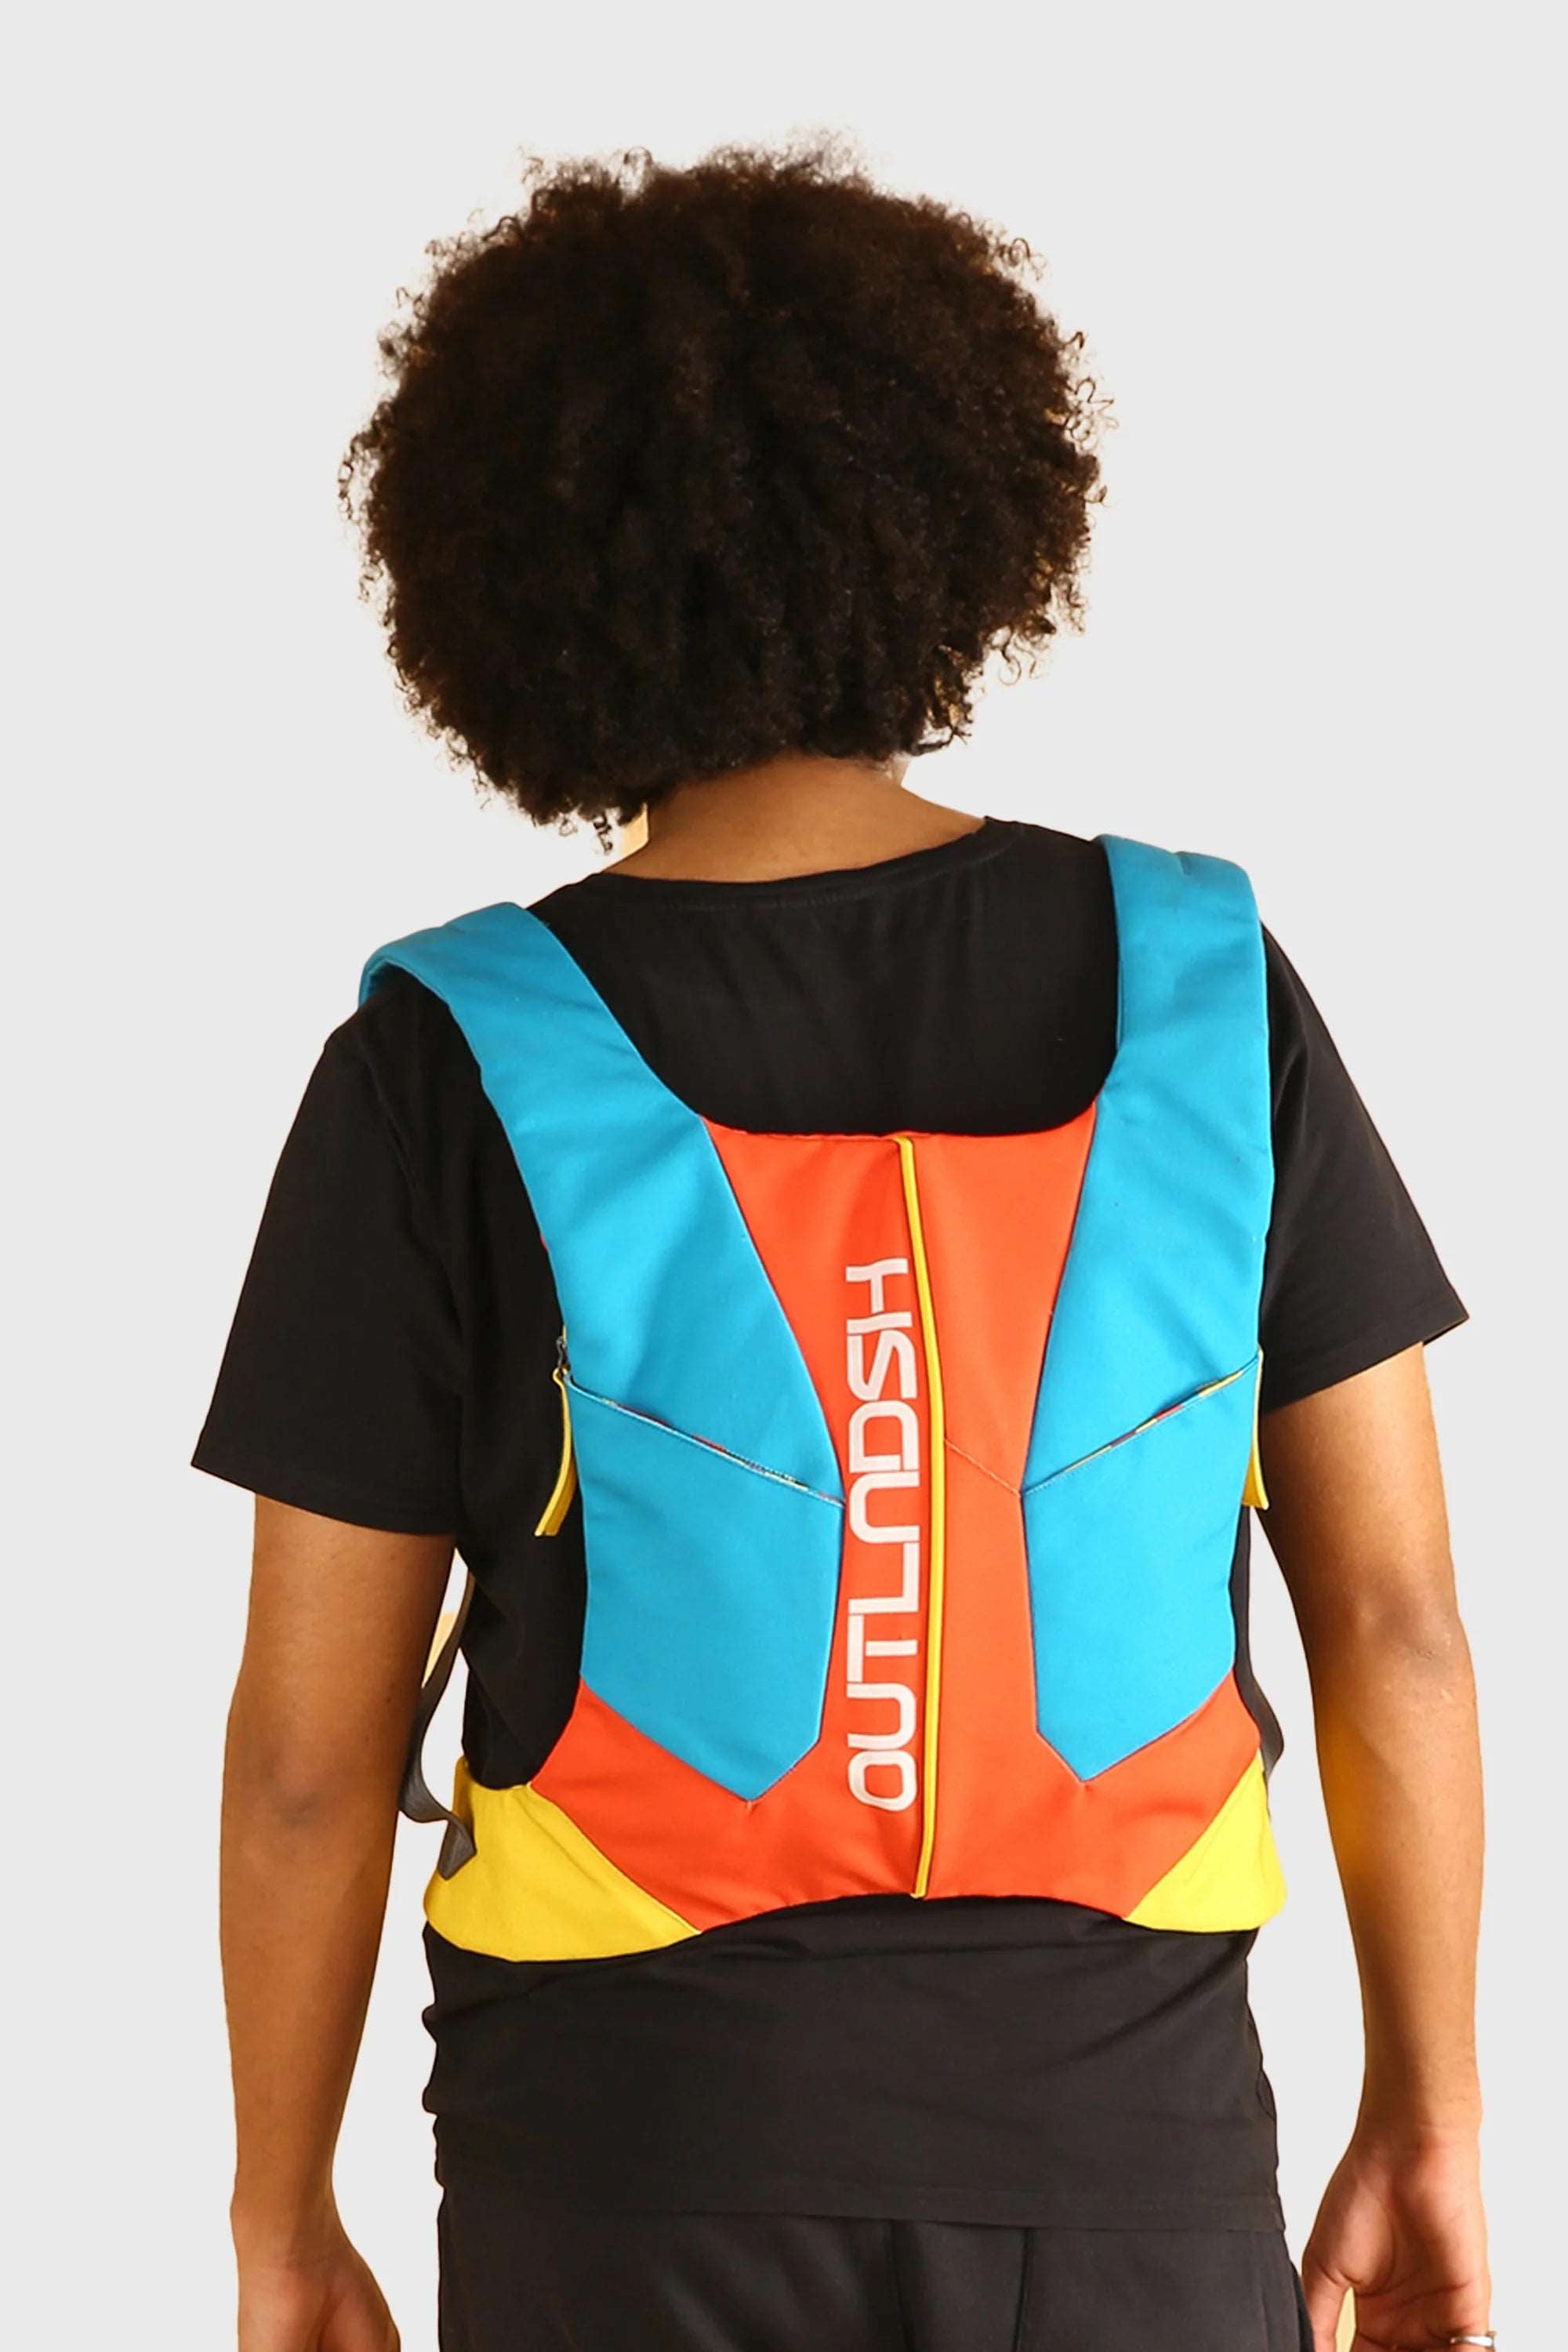 OUTLNDSH Backpack bag orange color for urban rider 